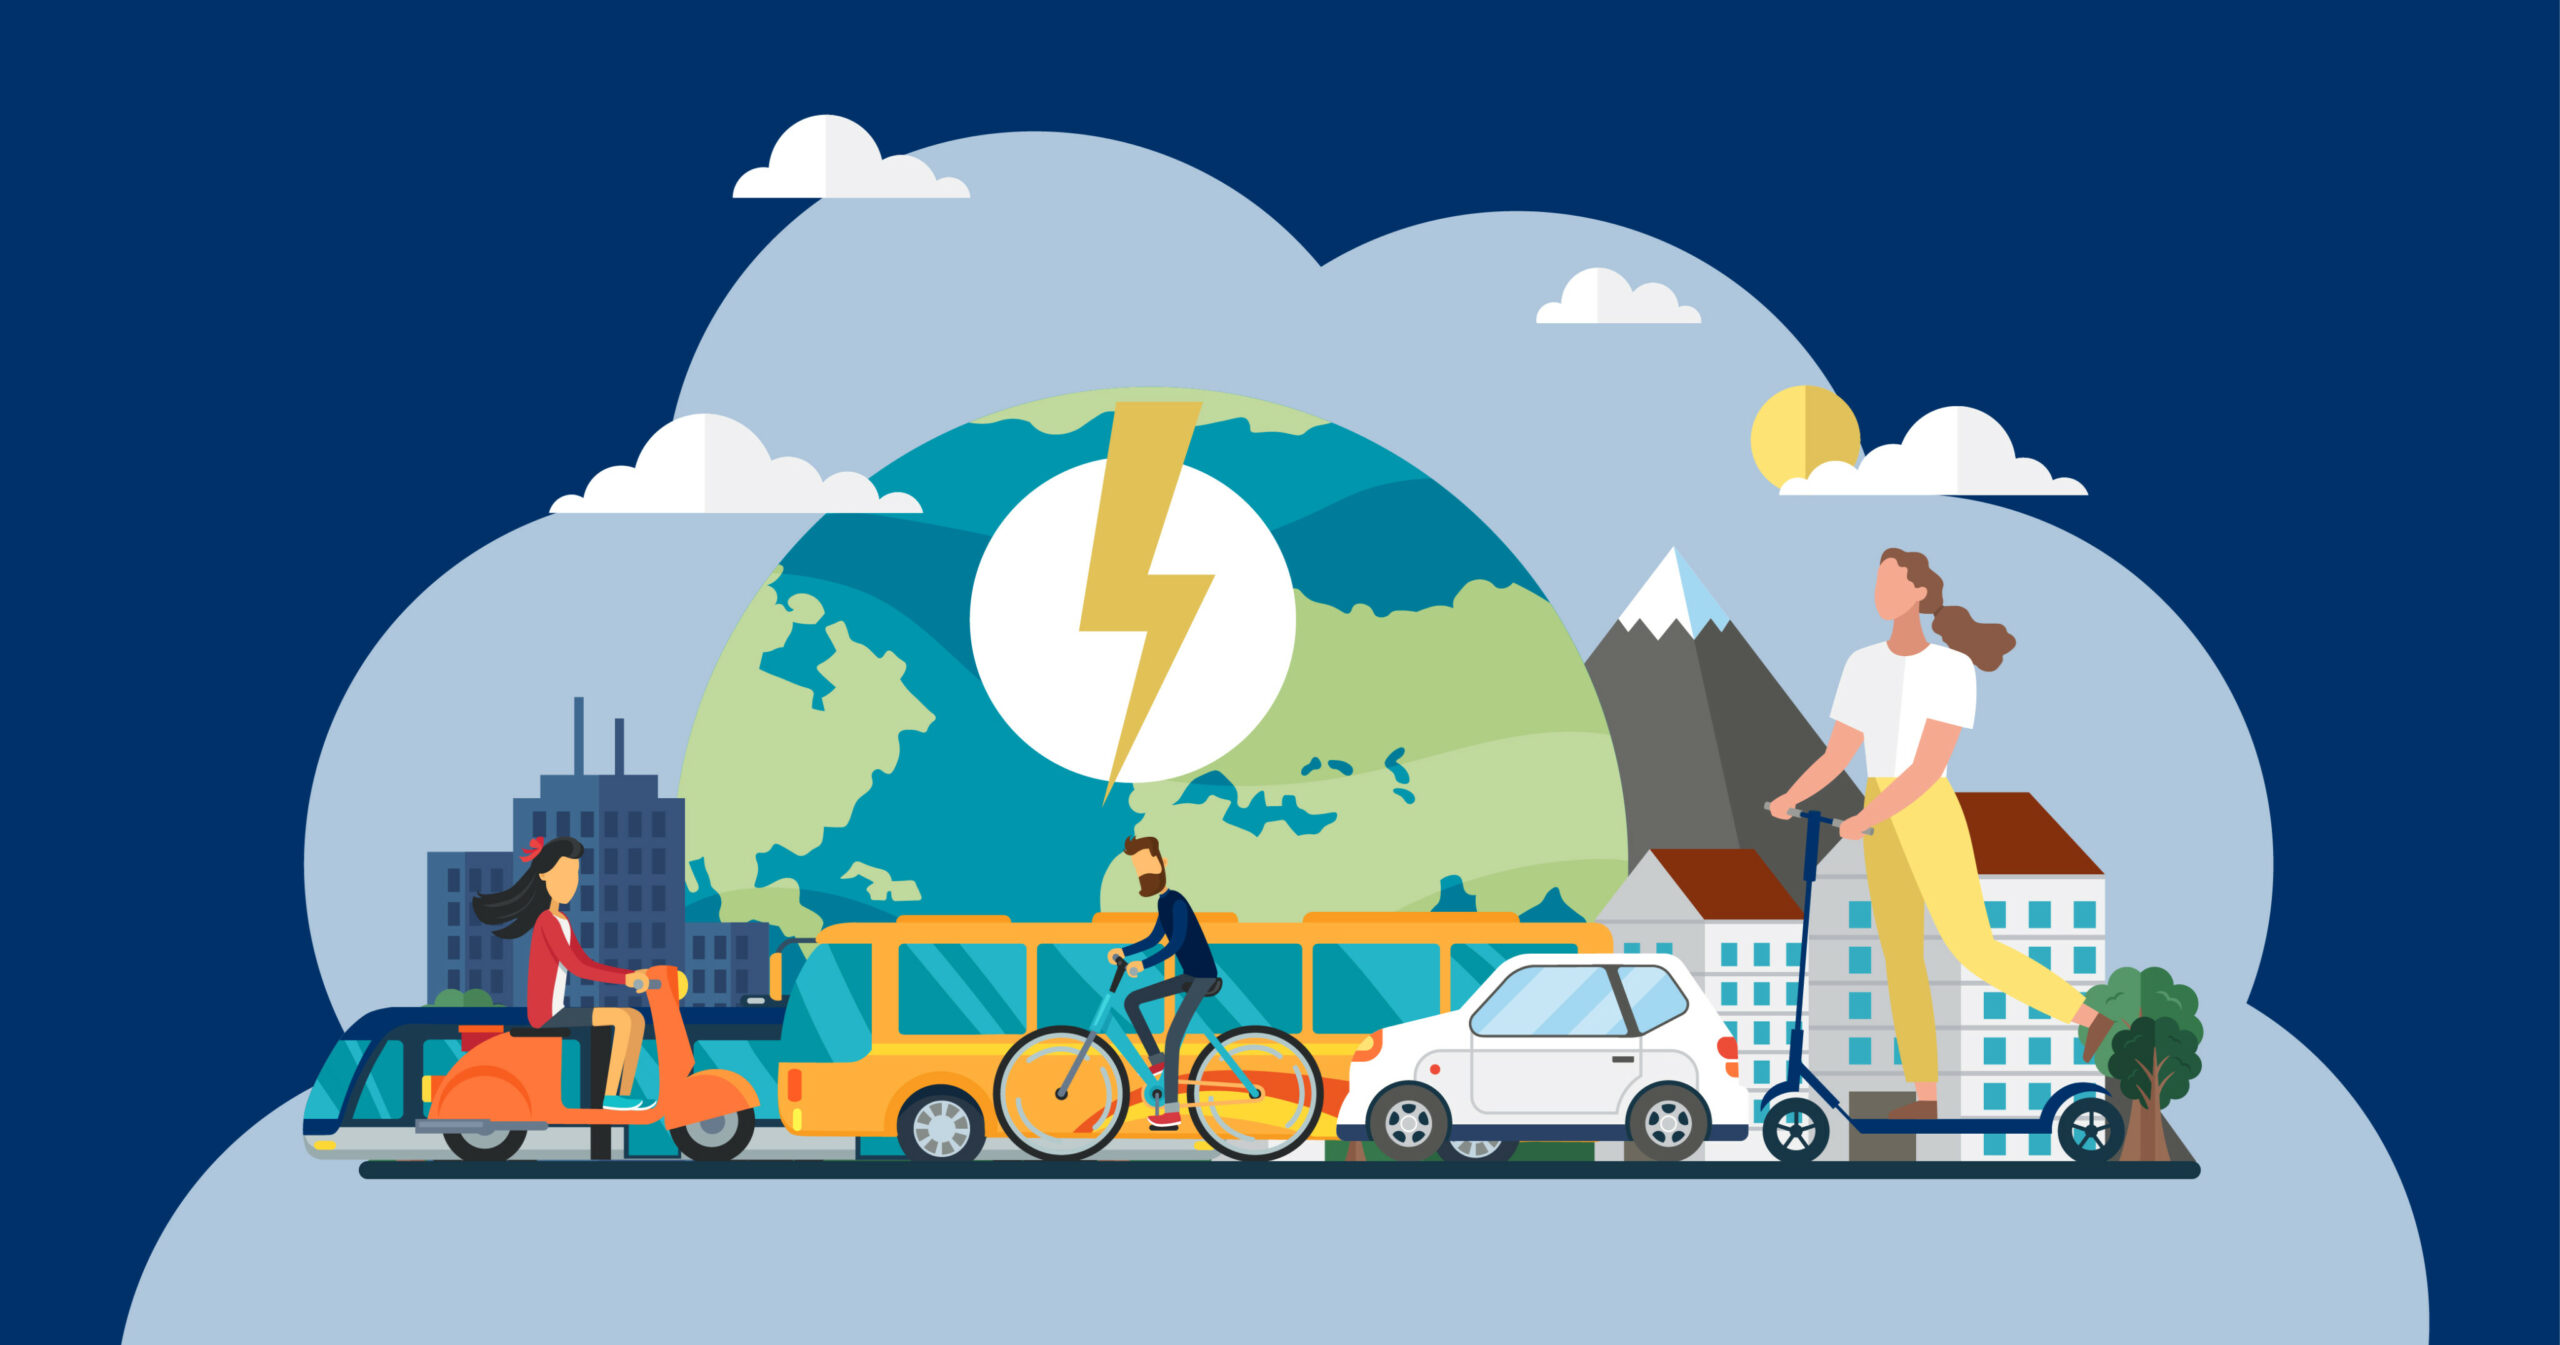 Zeichnung mit der Erde und Häusern und einem Berg im Hintergrund und verschiedenen Verkehrsmitteln (Motorroller, Bus, Bahn, Fahrrad, Auto, Tretroller) und Personen im Vordergrund.